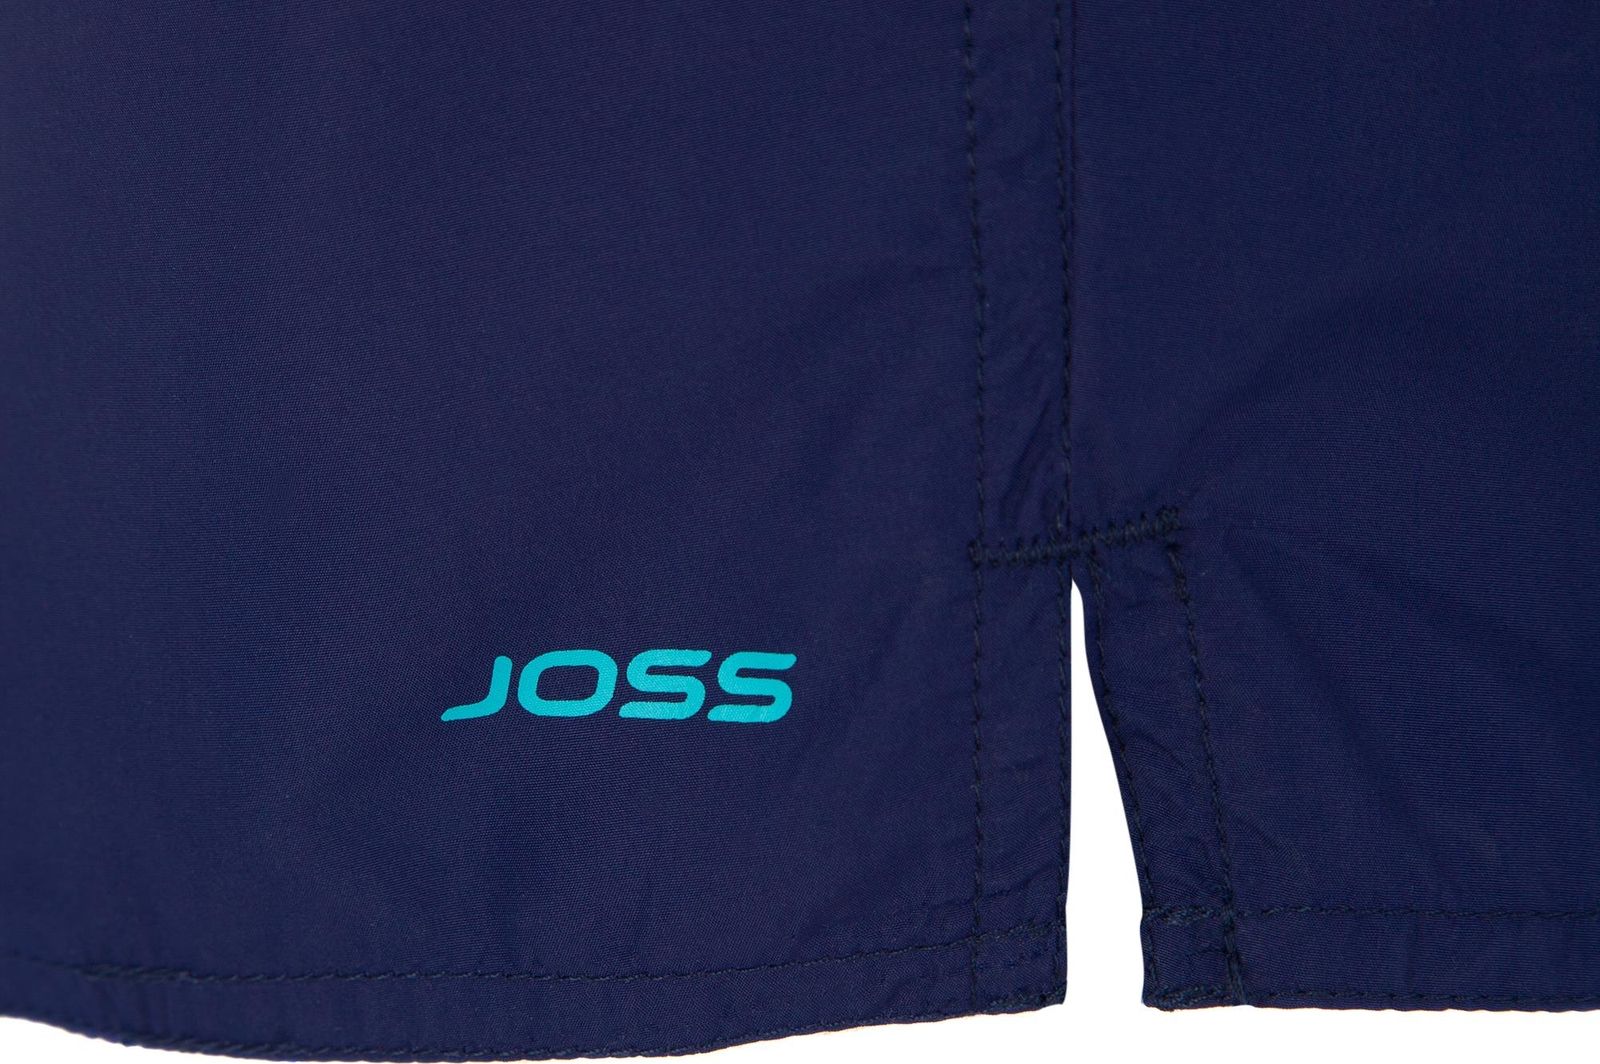     Joss Men's shorts, : . MSW40S6-V4.  48